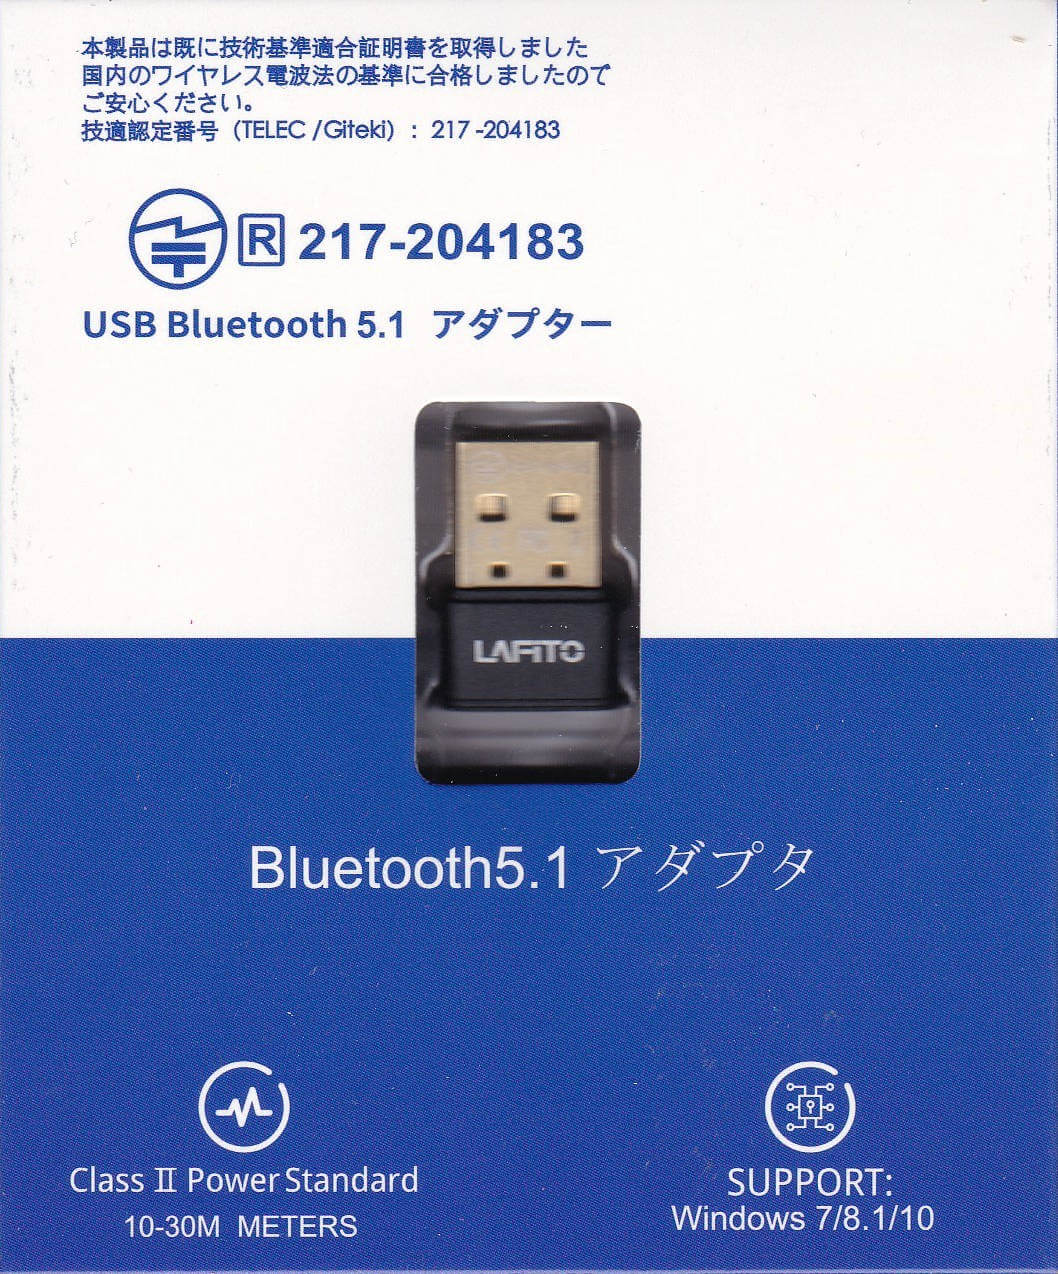 パソコン用Bluetoothアダプタ